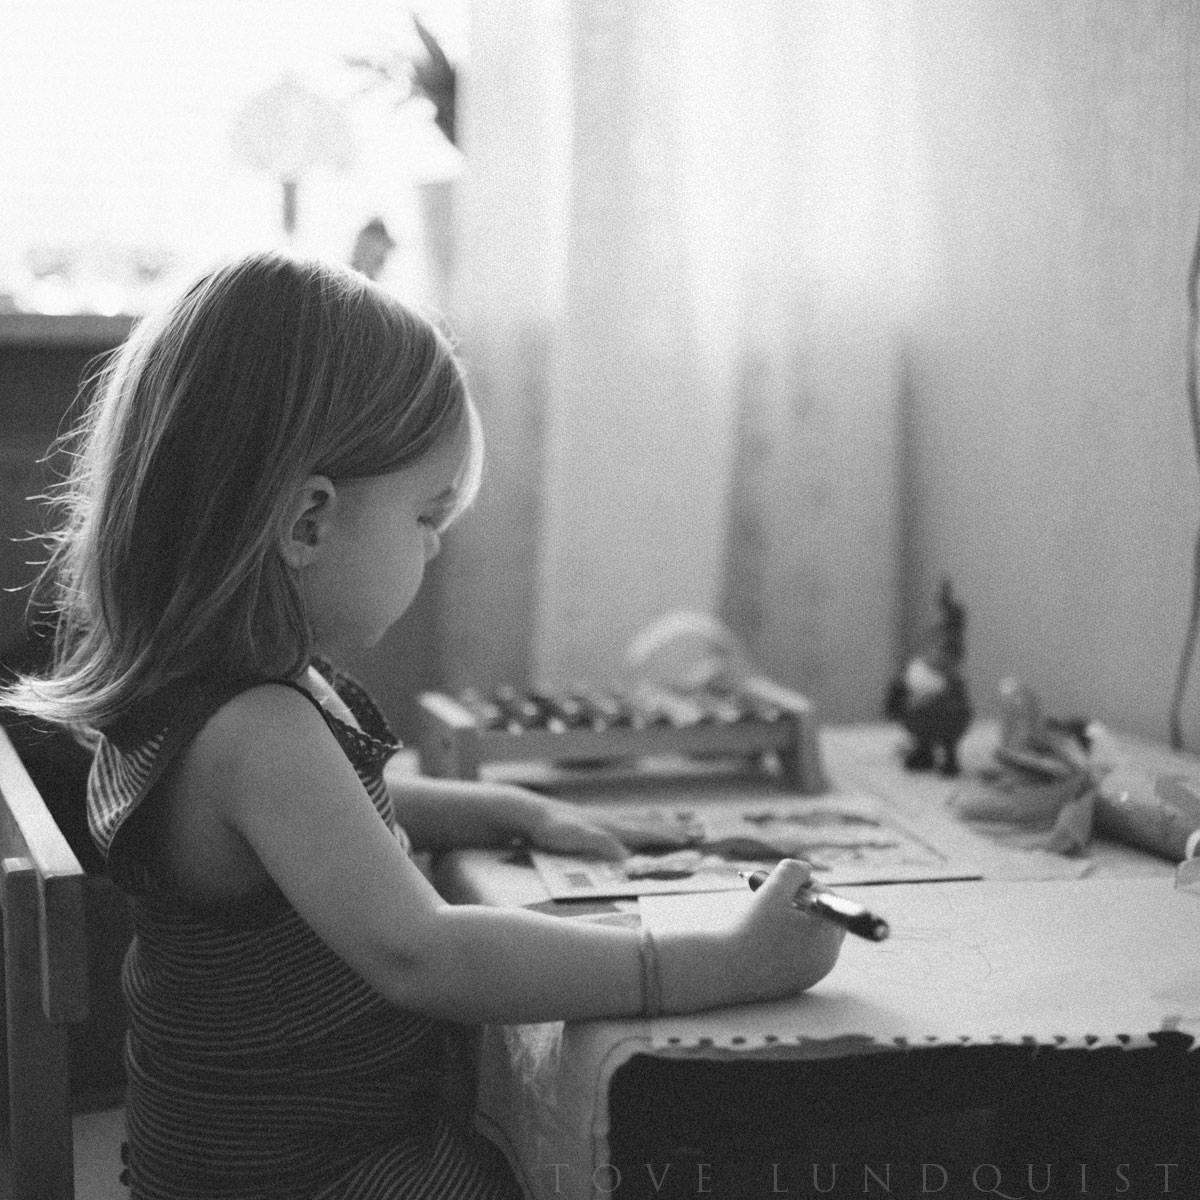 Svartvit foto på barn. Lifestyle fotografering tillsammans med fotograf Tove Lundquist, verksam i Malmö, Skåne.